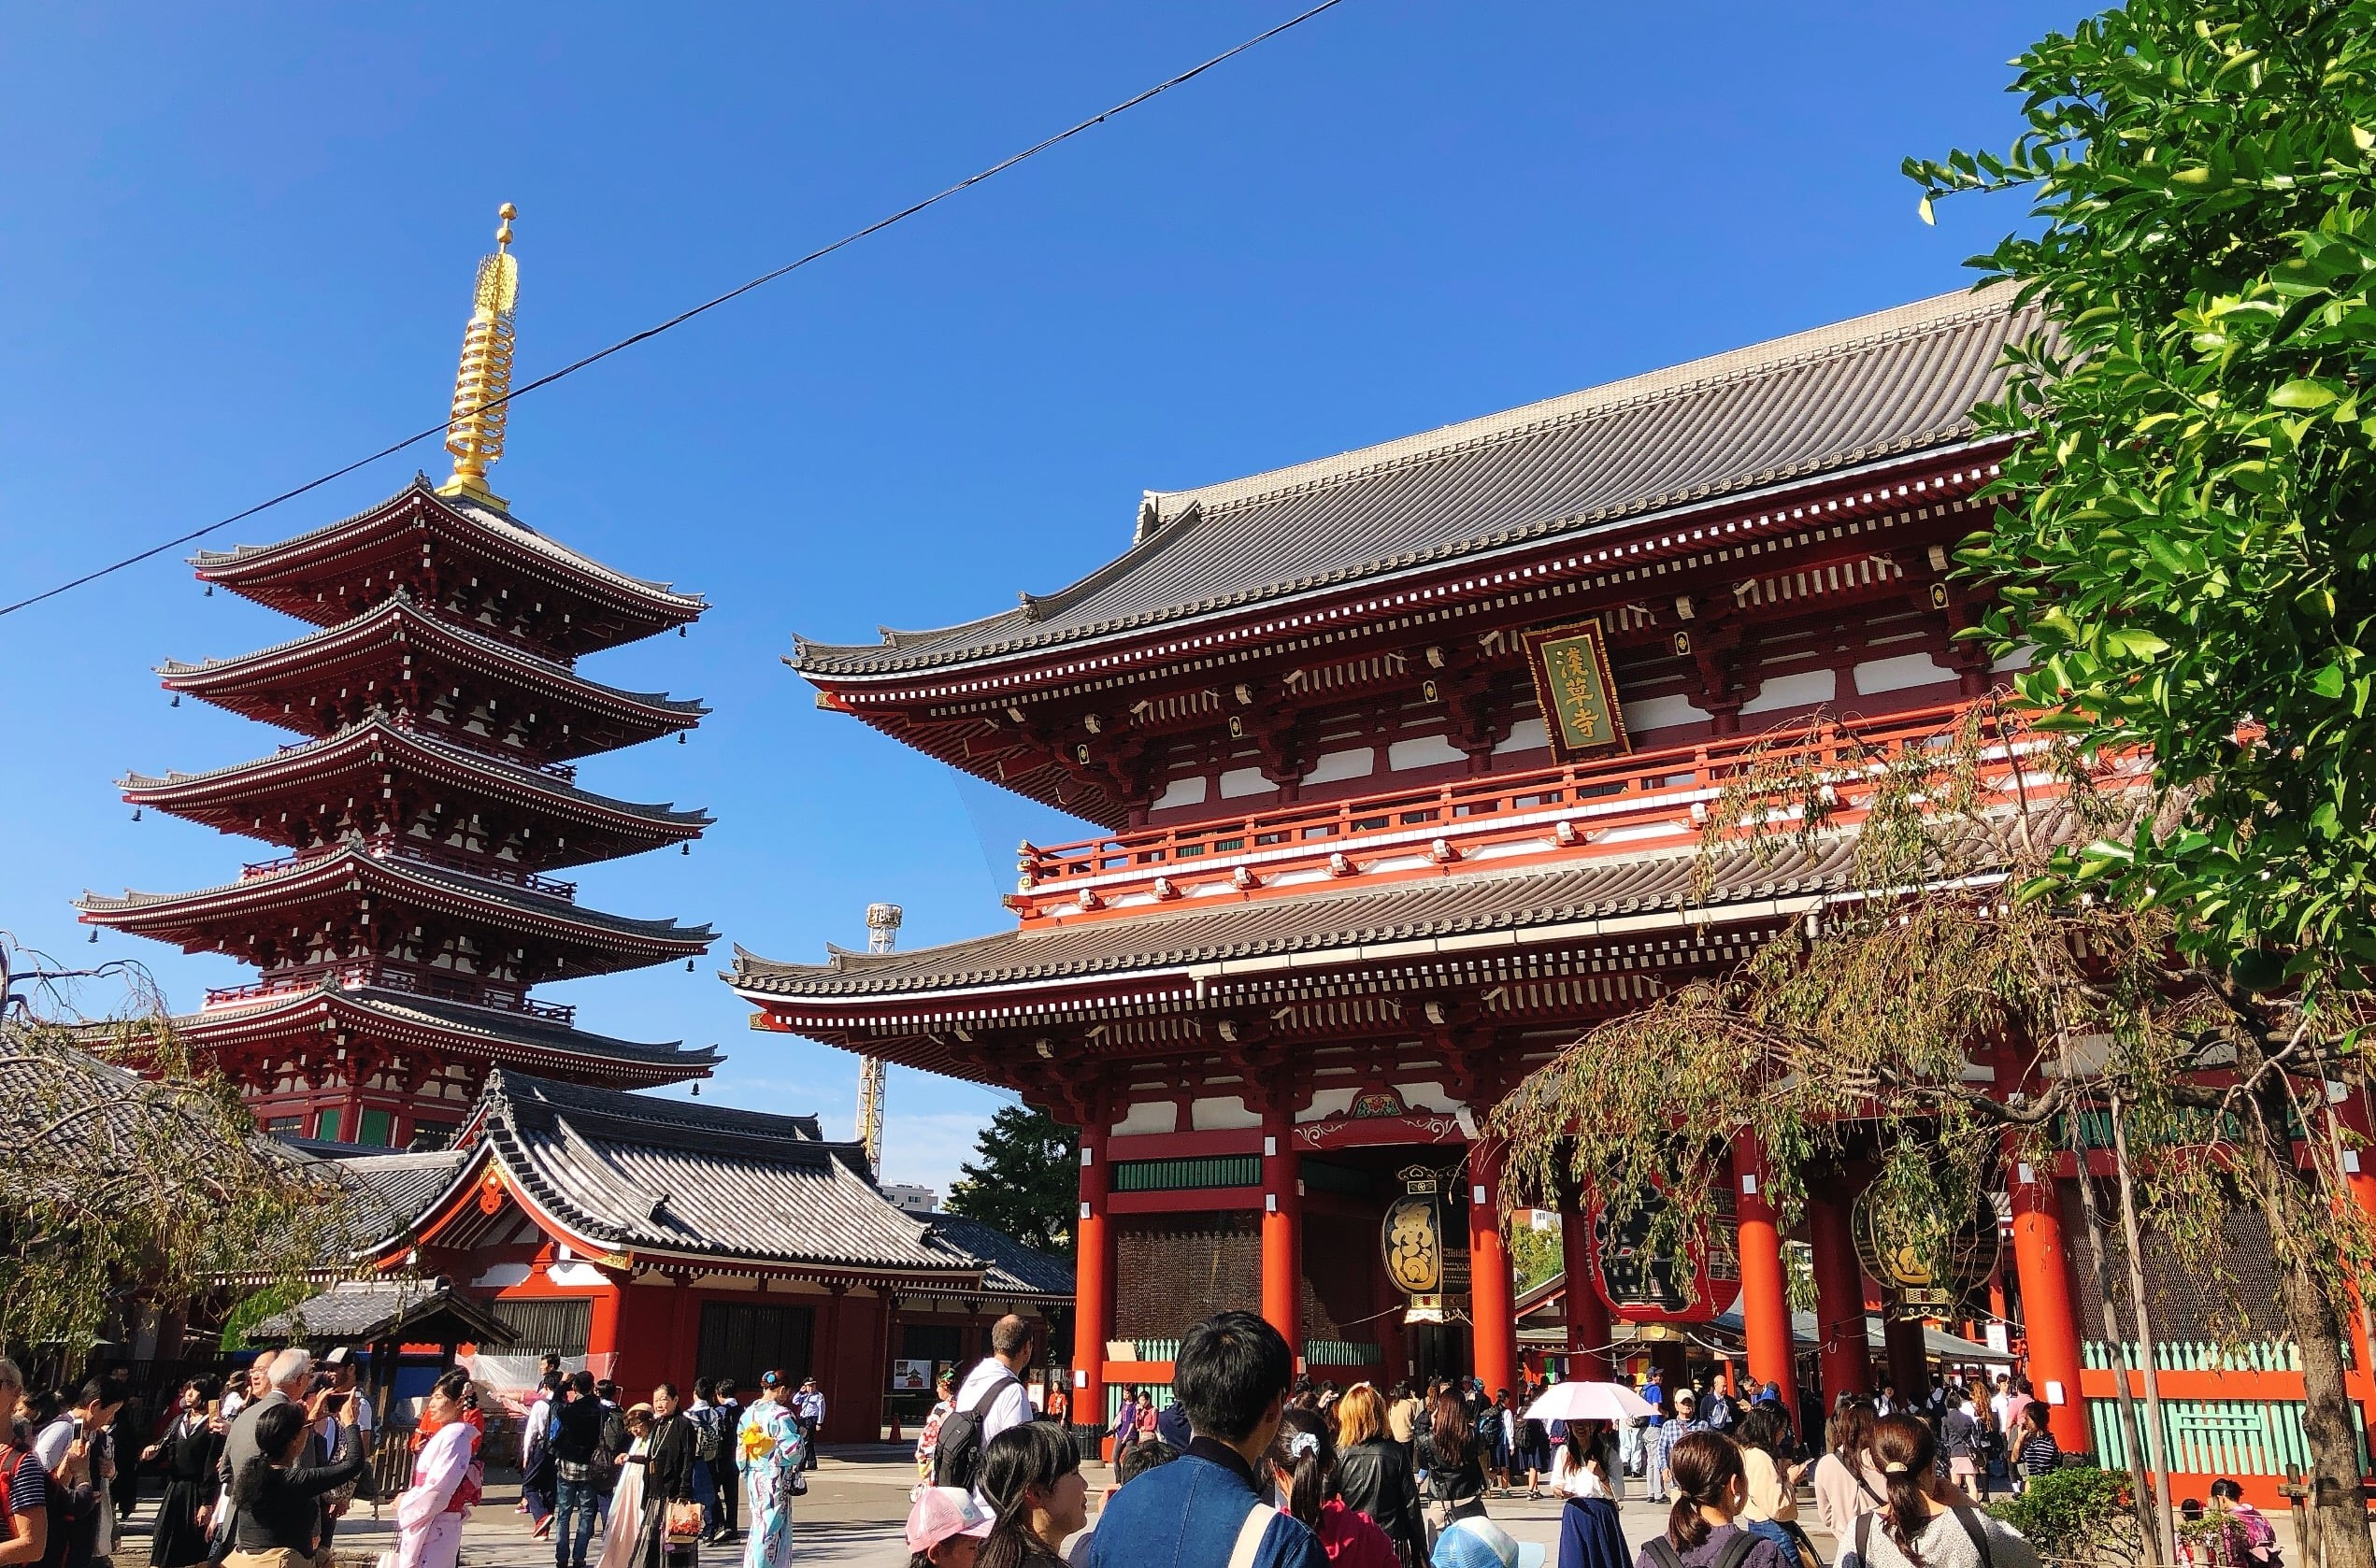 The gate and pagoda at Sensoji Temple